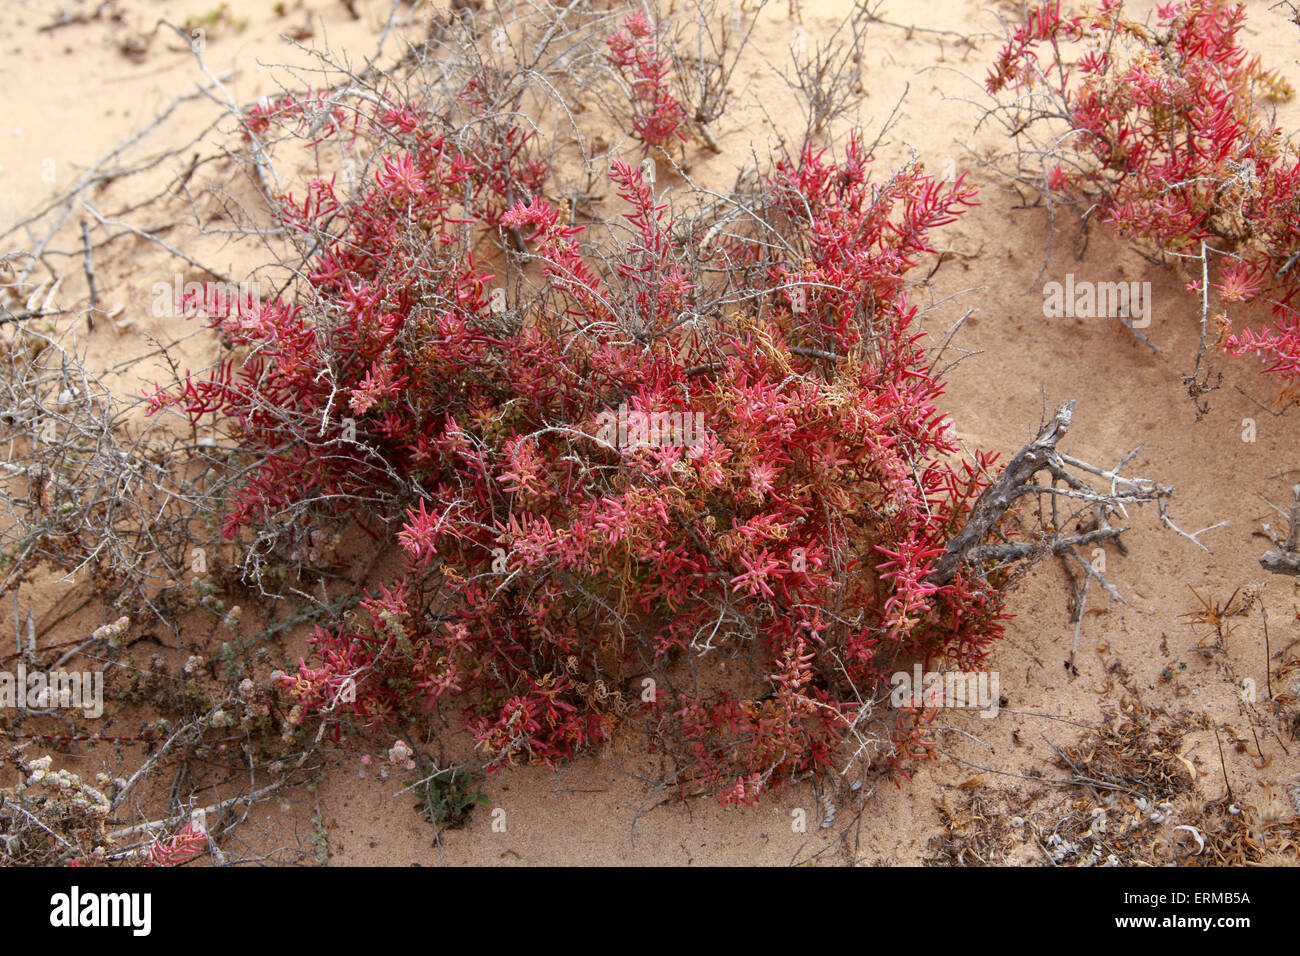 Mar-arbustivas o álcali Seepweed blite, Suaeda vera, Amarantáceas. Sal resistente planta NP, Corralejo, Fuerteventura, Islas Canarias. Foto de stock